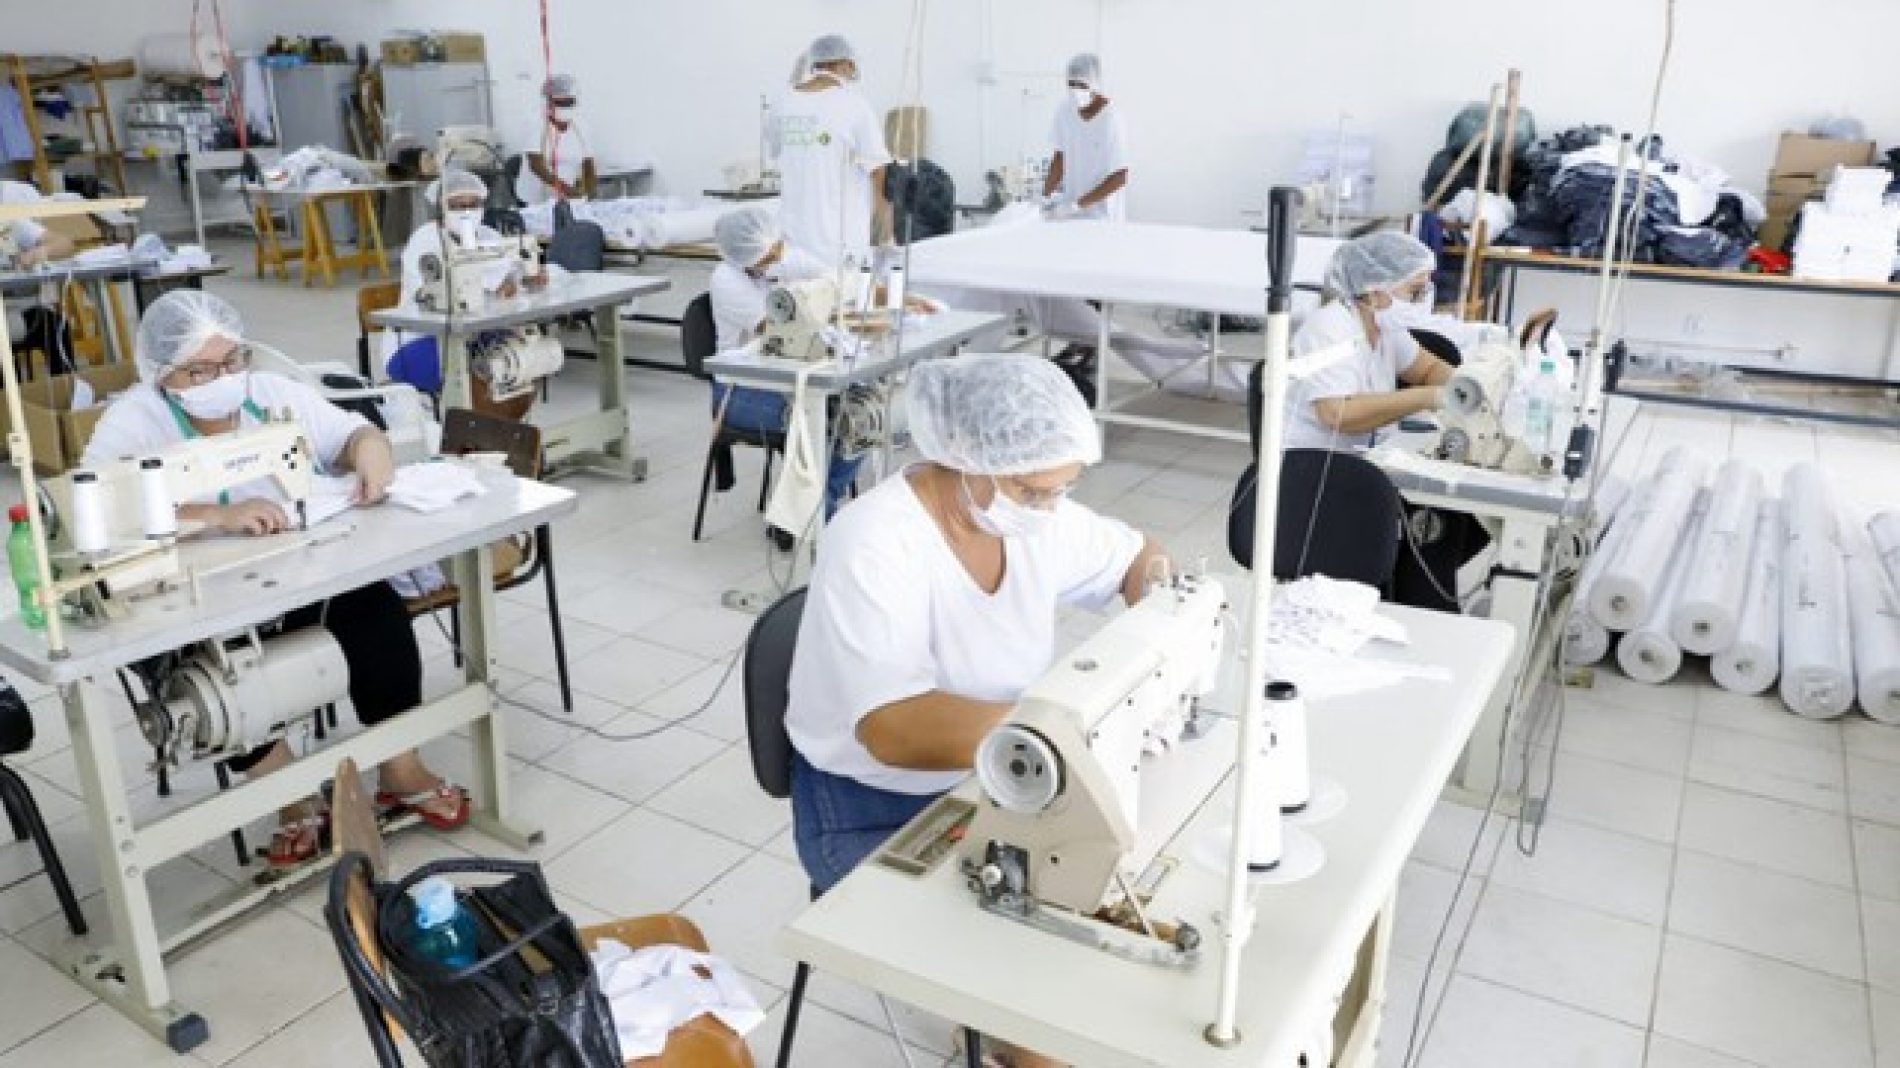 REGIÃO: Cooperativa de costura de Rio Preto confecciona máscaras para funcionários da Saúde